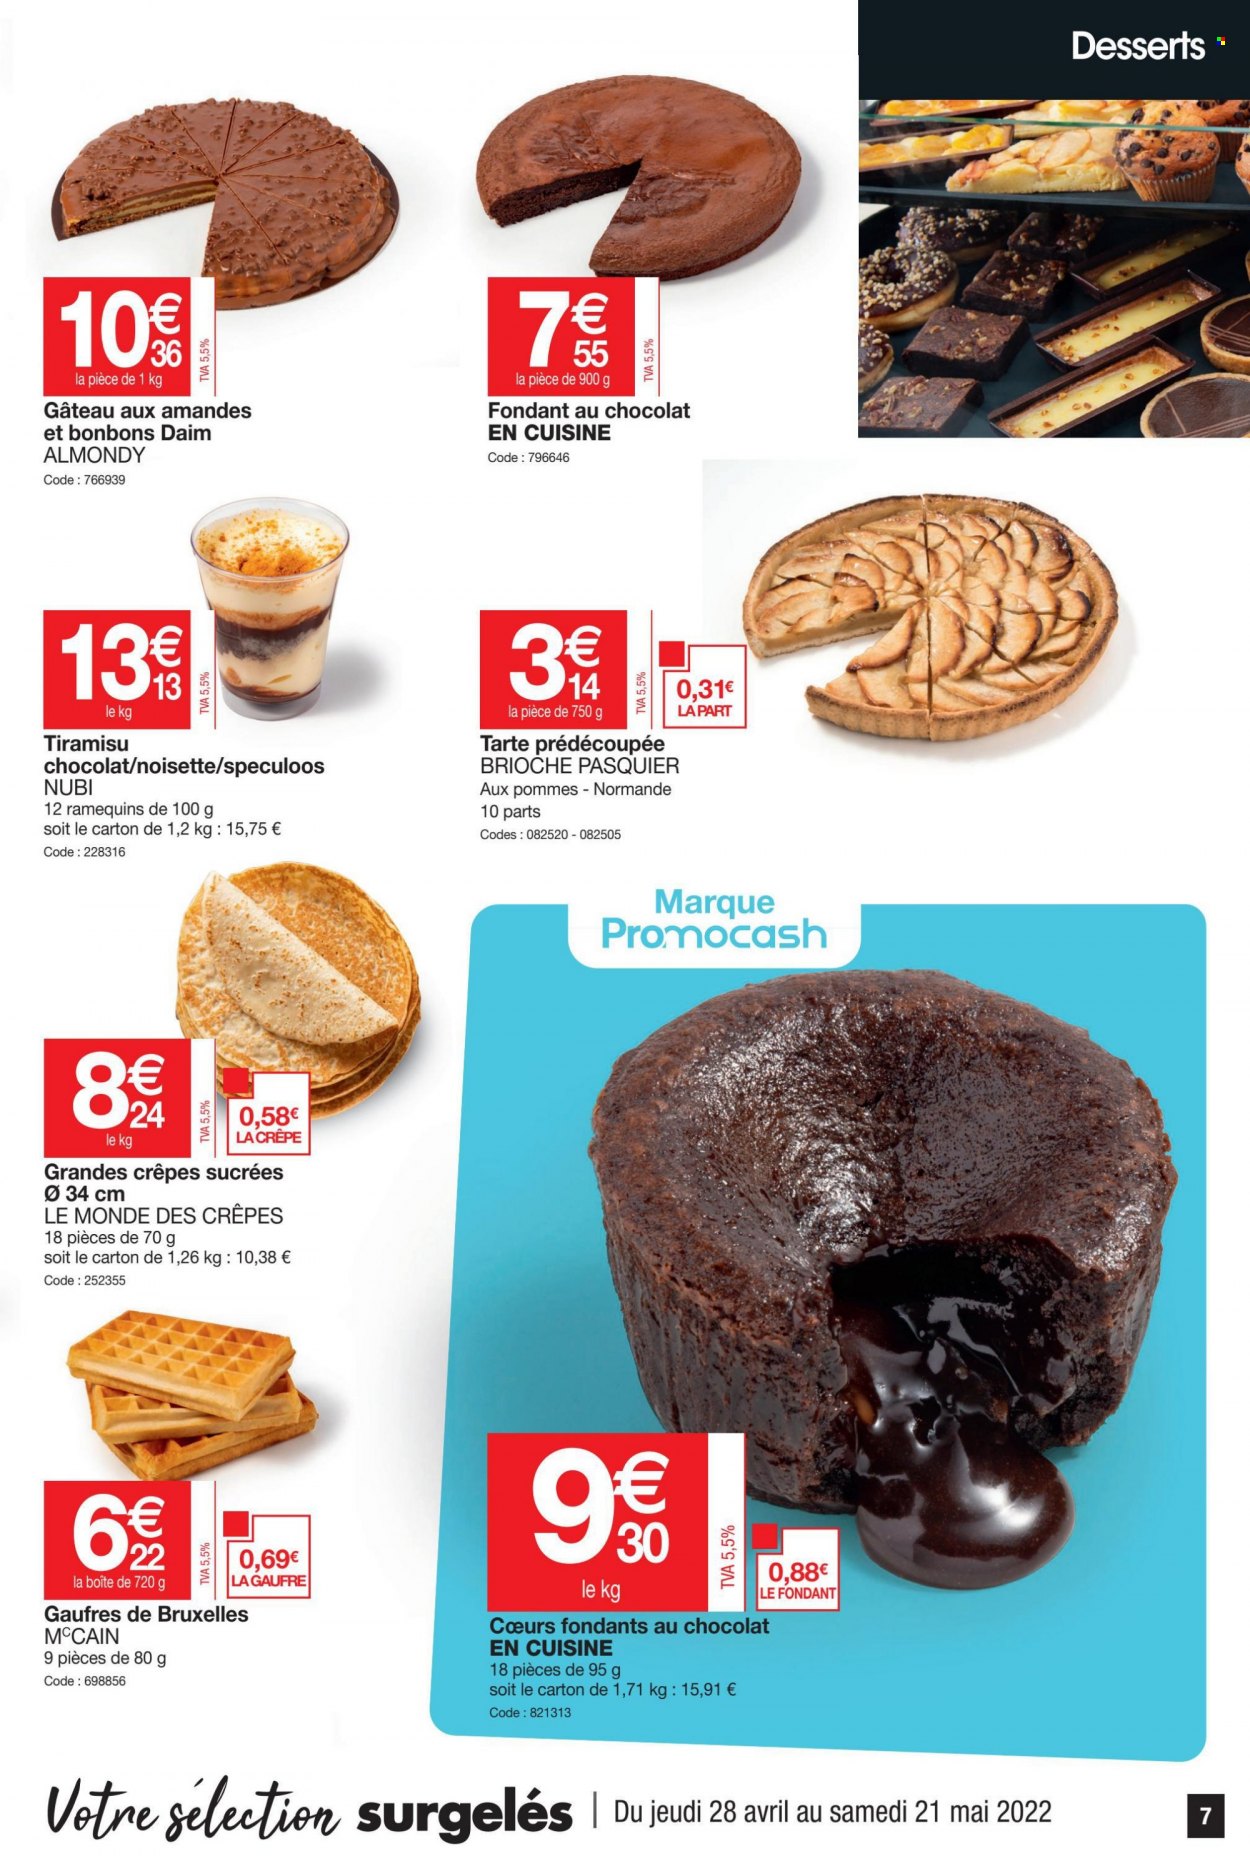 thumbnail - Catalogue Promocash - 28/04/2022 - 21/05/2022 - Produits soldés - tarte, gâteau, brioche pasquier, crêpes, gaufres, tiramisu, speculoos, Daim. Page 7.